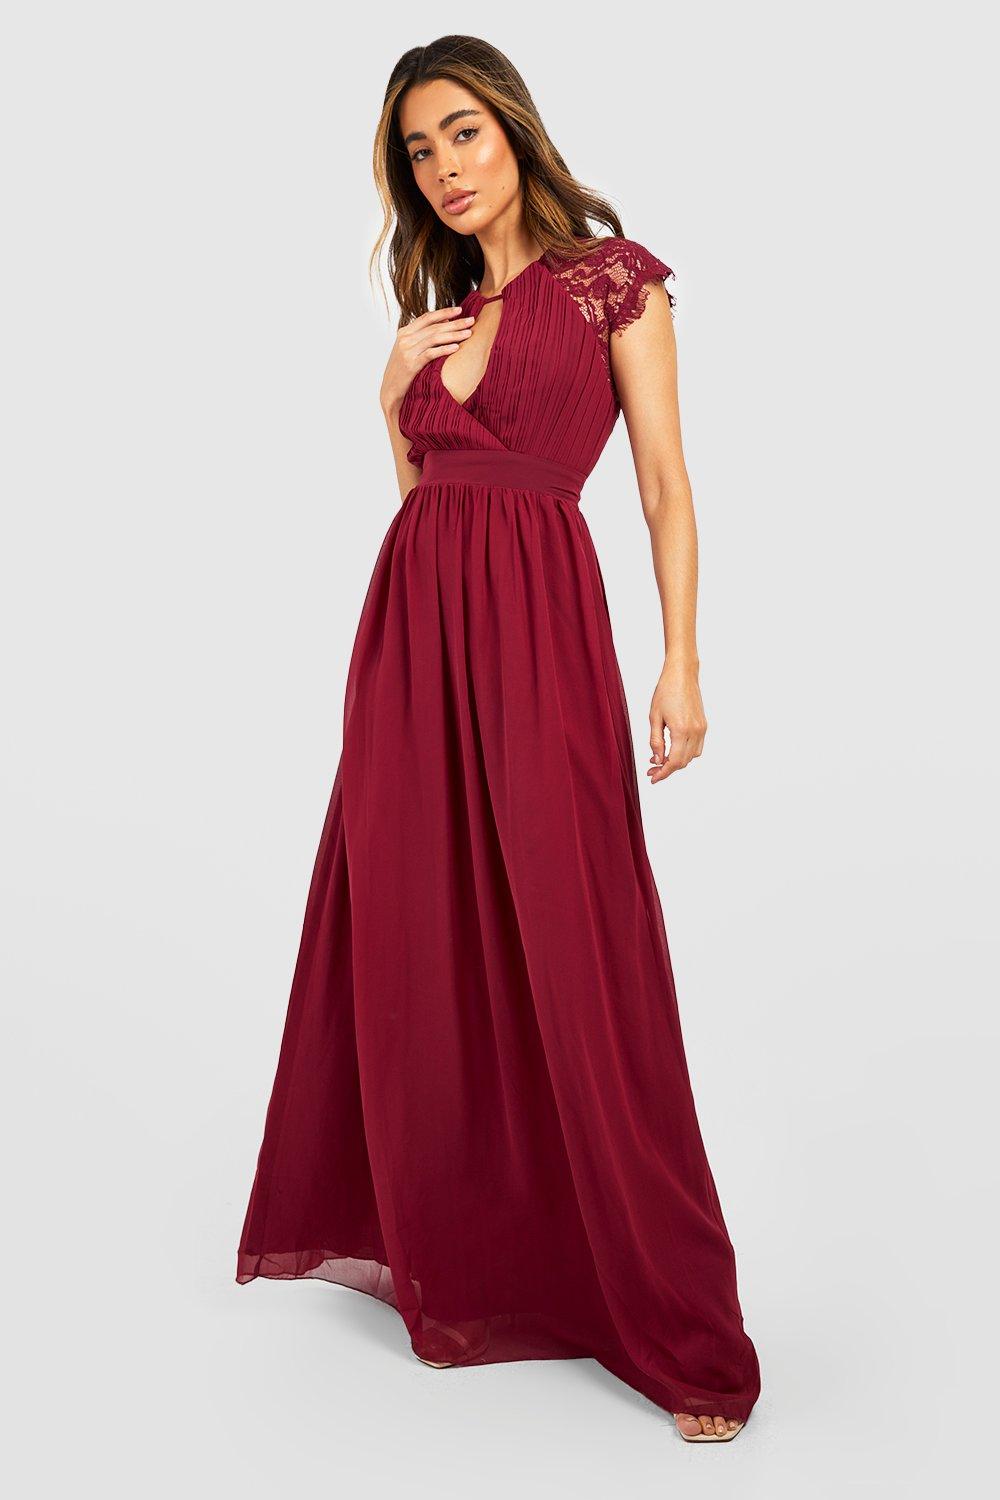 robe longue cache-coeur plissée - rouge lie de vin - 40, rouge lie de vin